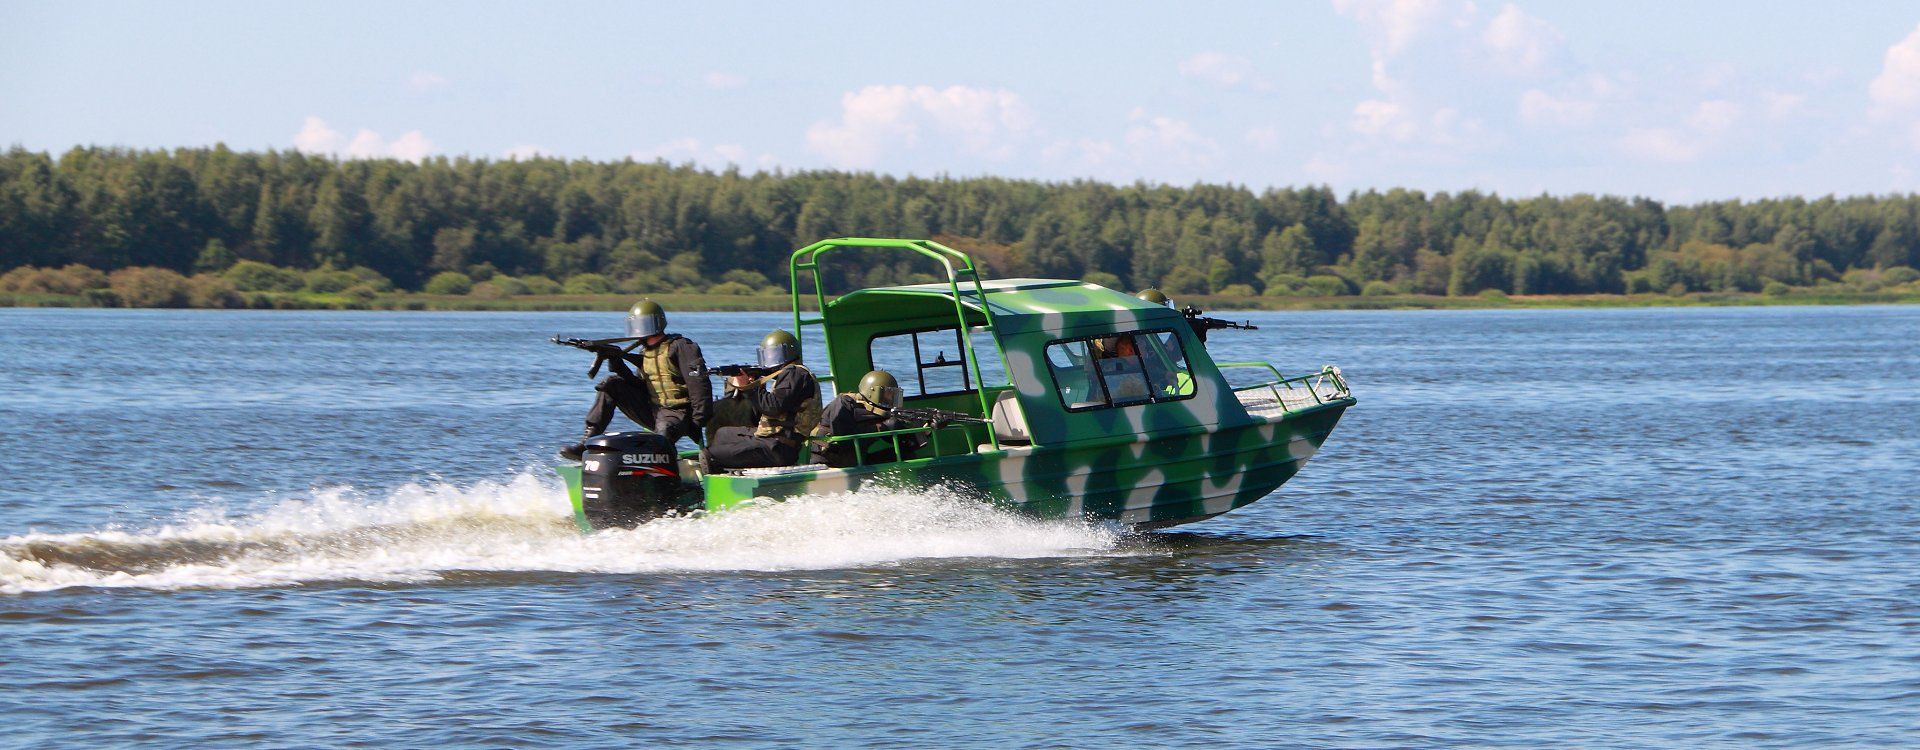 Моторная лодка КС-Фьорд 62 Рубочный  - фото 2